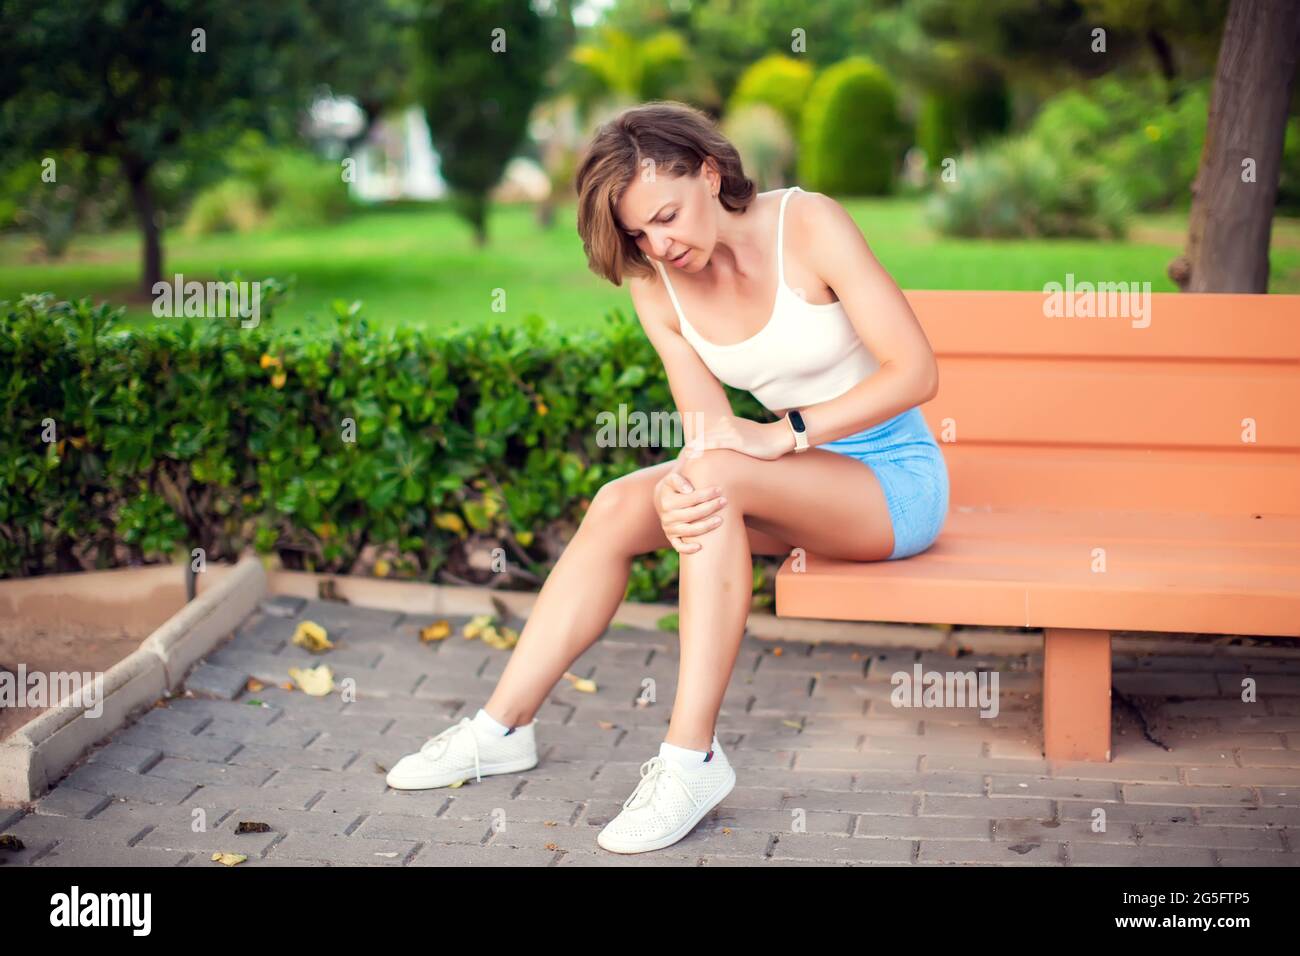 Dolor de rodilla. Mujer con lesión en la rodilla sentada en el banco al aire libre. Concepto de salud y estilo de vida Foto de stock